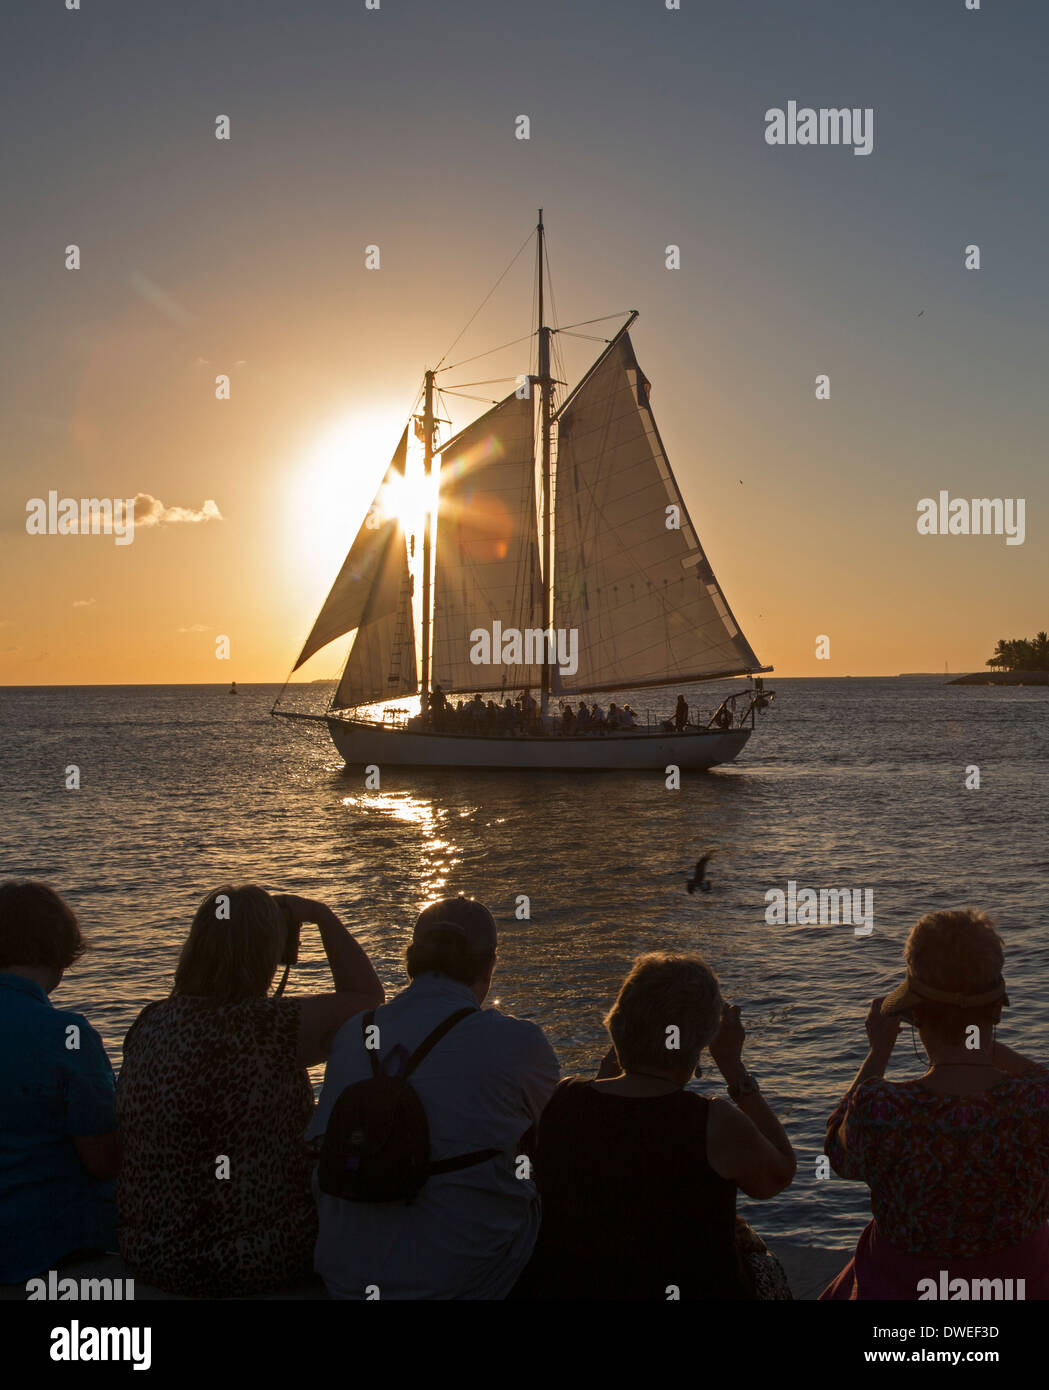 Key West, Florida - turisti si riuniscono in Mallory Square e ride barche a vela per ammirare il tramonto. Foto Stock